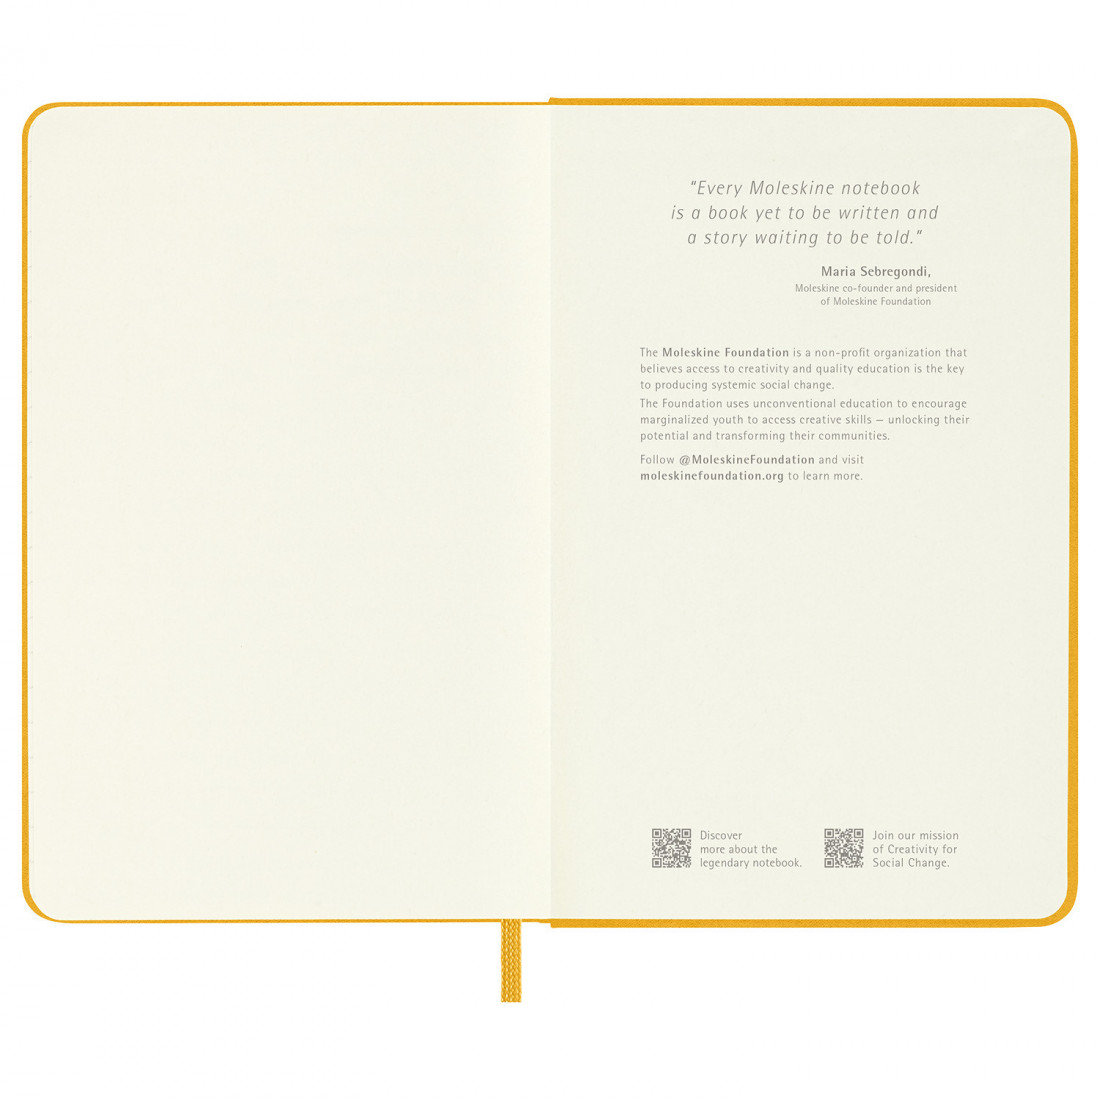 Notebook Extra Large 19x25 Silk Orange Yellow Ruled Hard Cover Moleskine